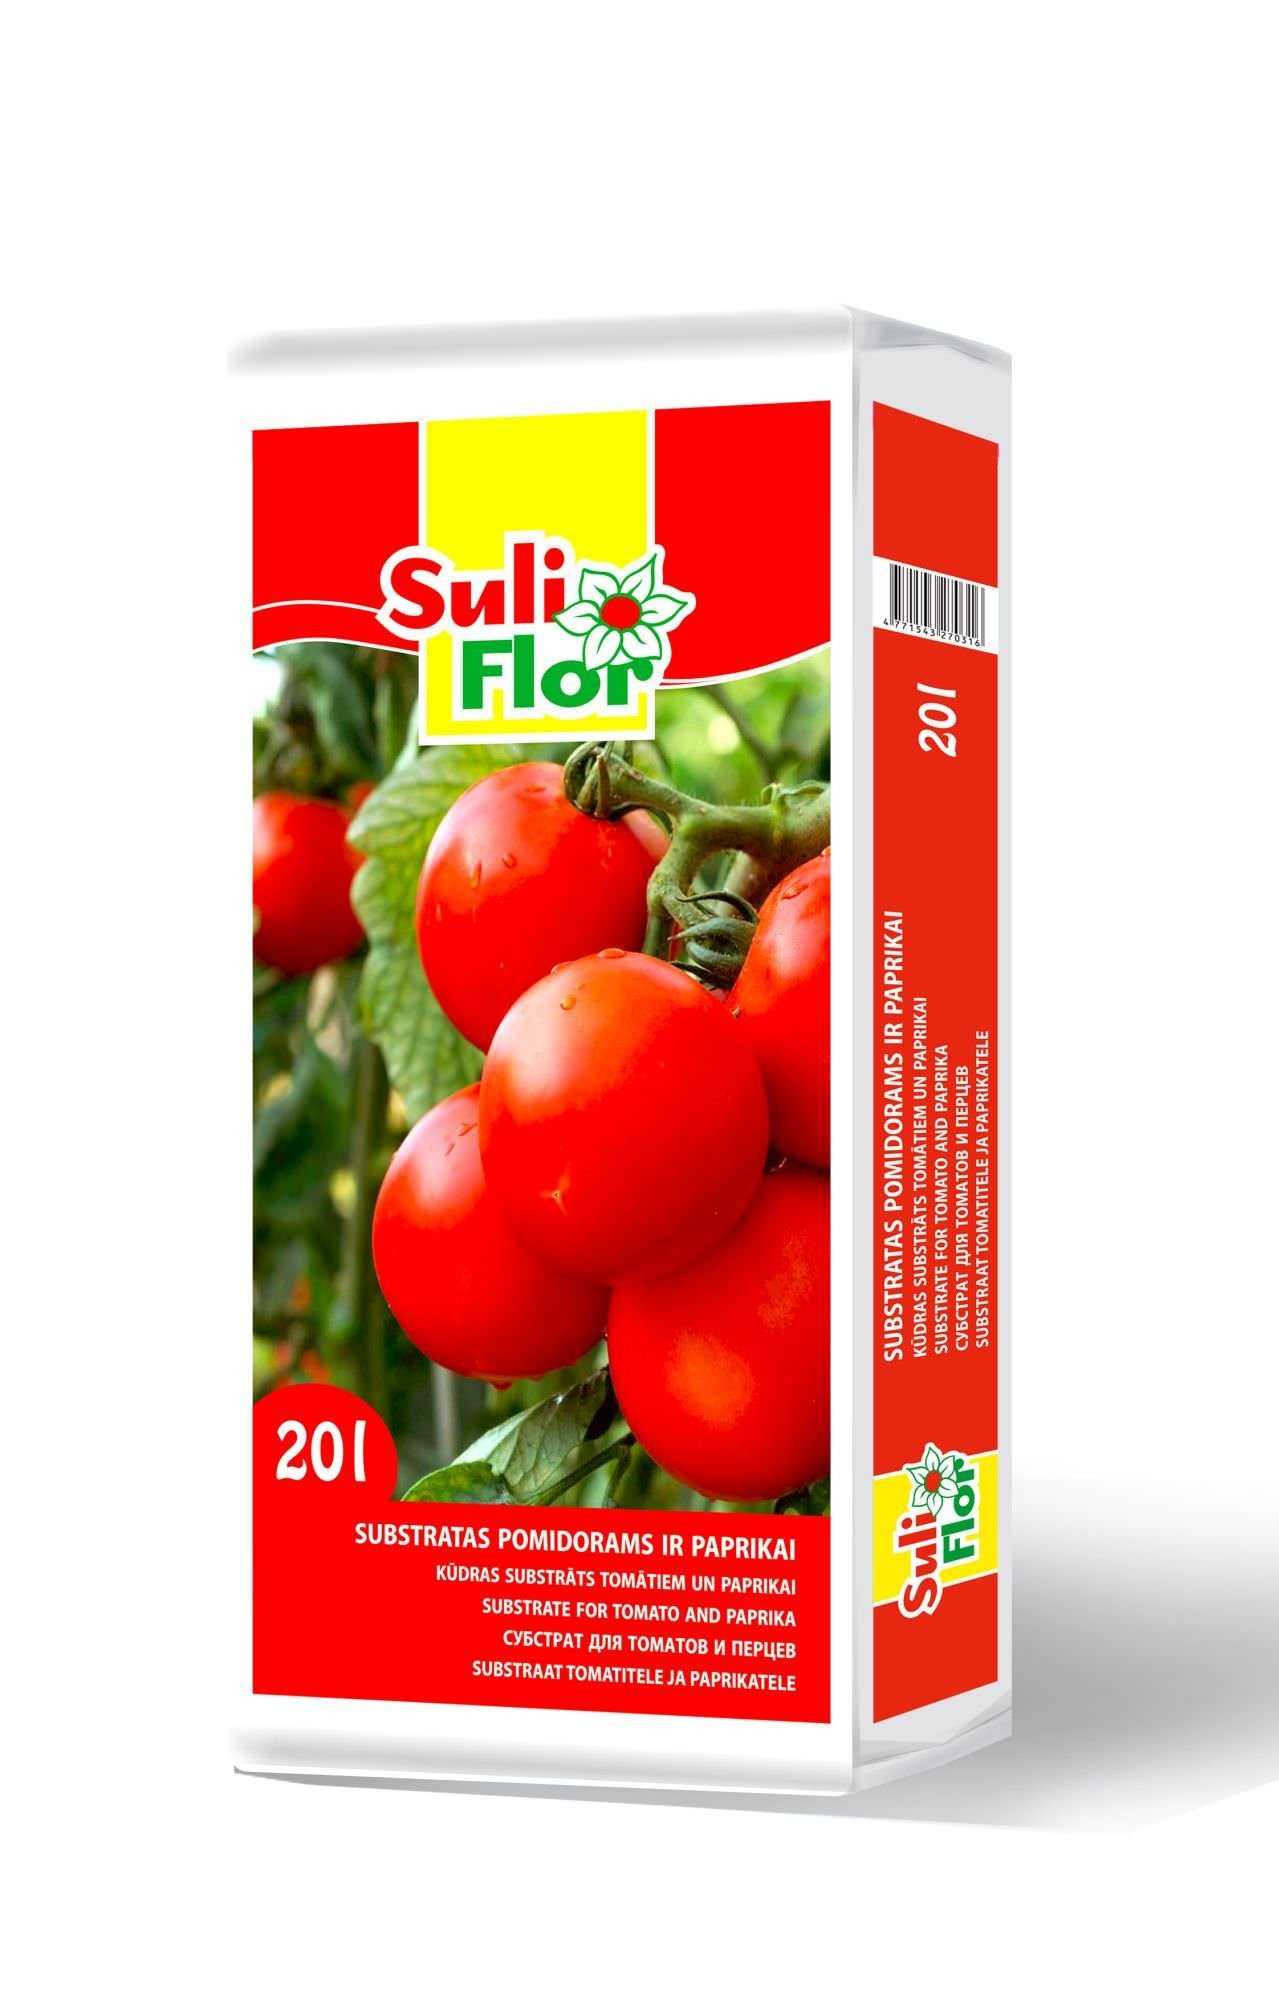 Pomidorų substratas SULIFLOR, 20 l